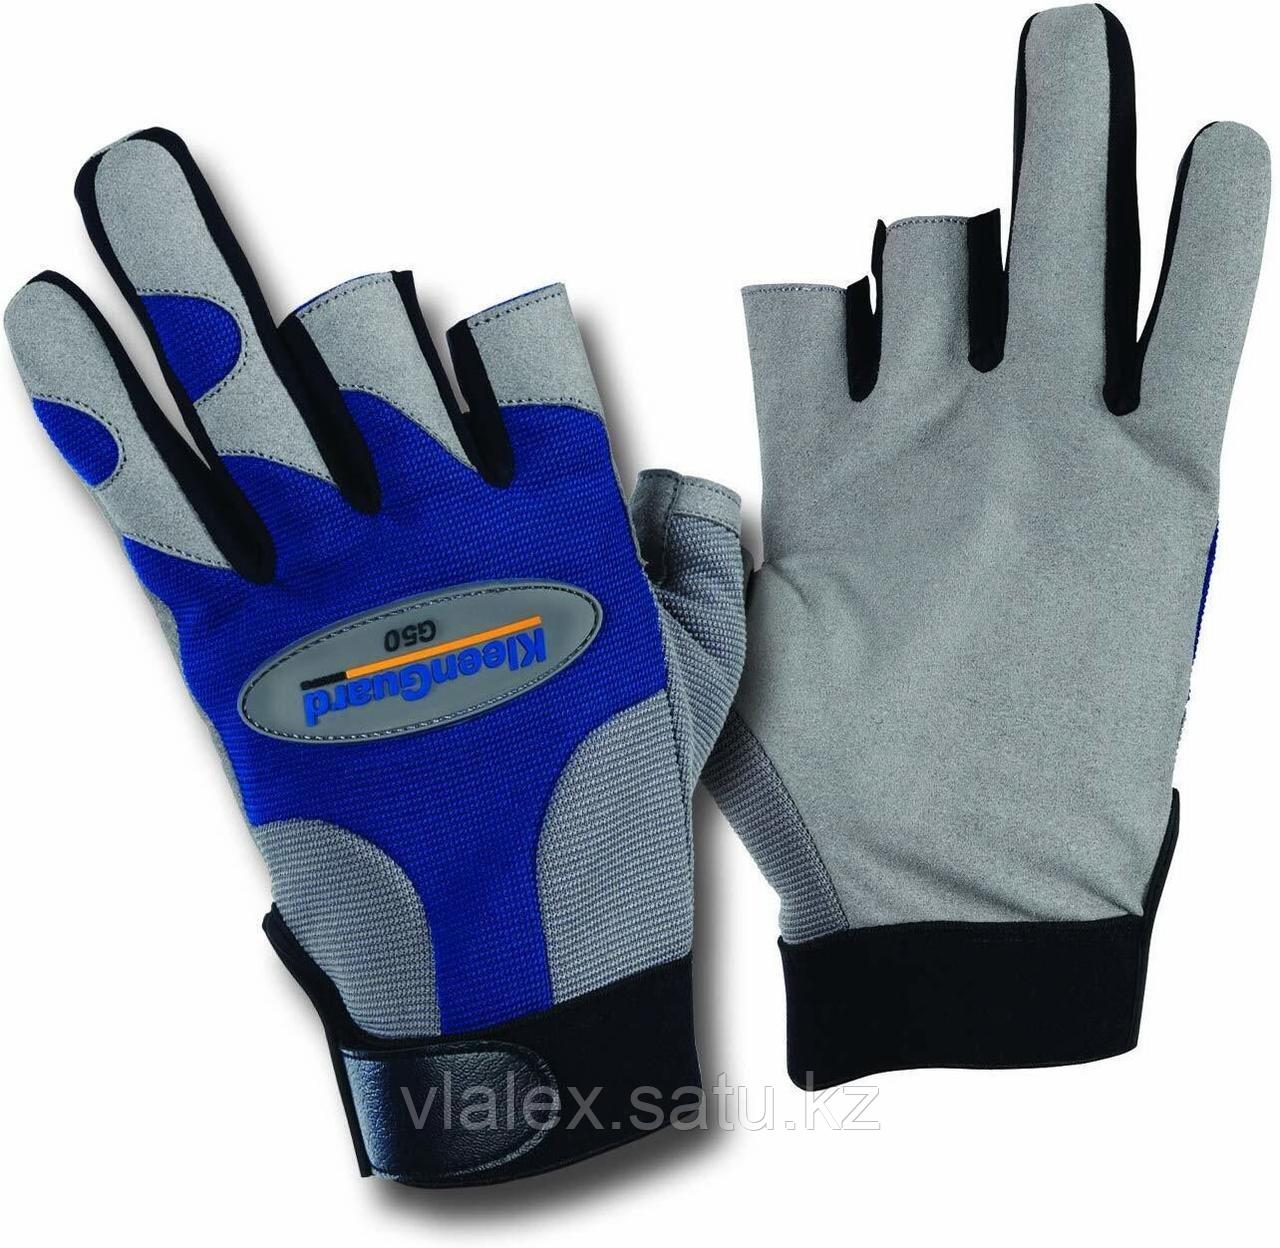 Перчатки для защиты от механических повреждений KLEENGUARD*G50 размер М